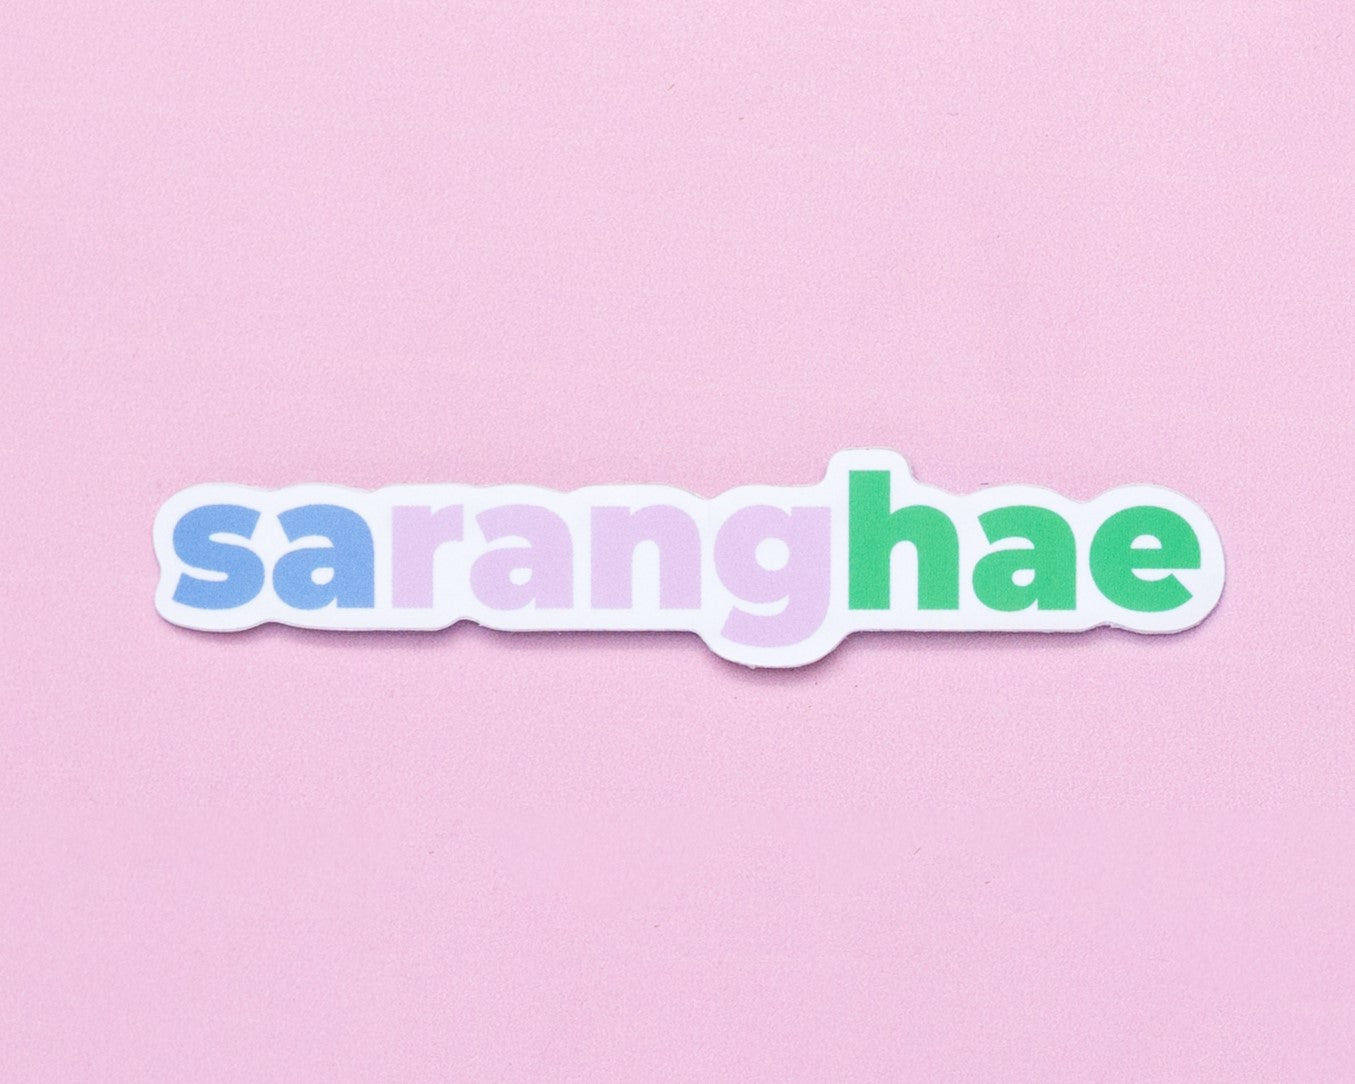 Saranghae Sticker